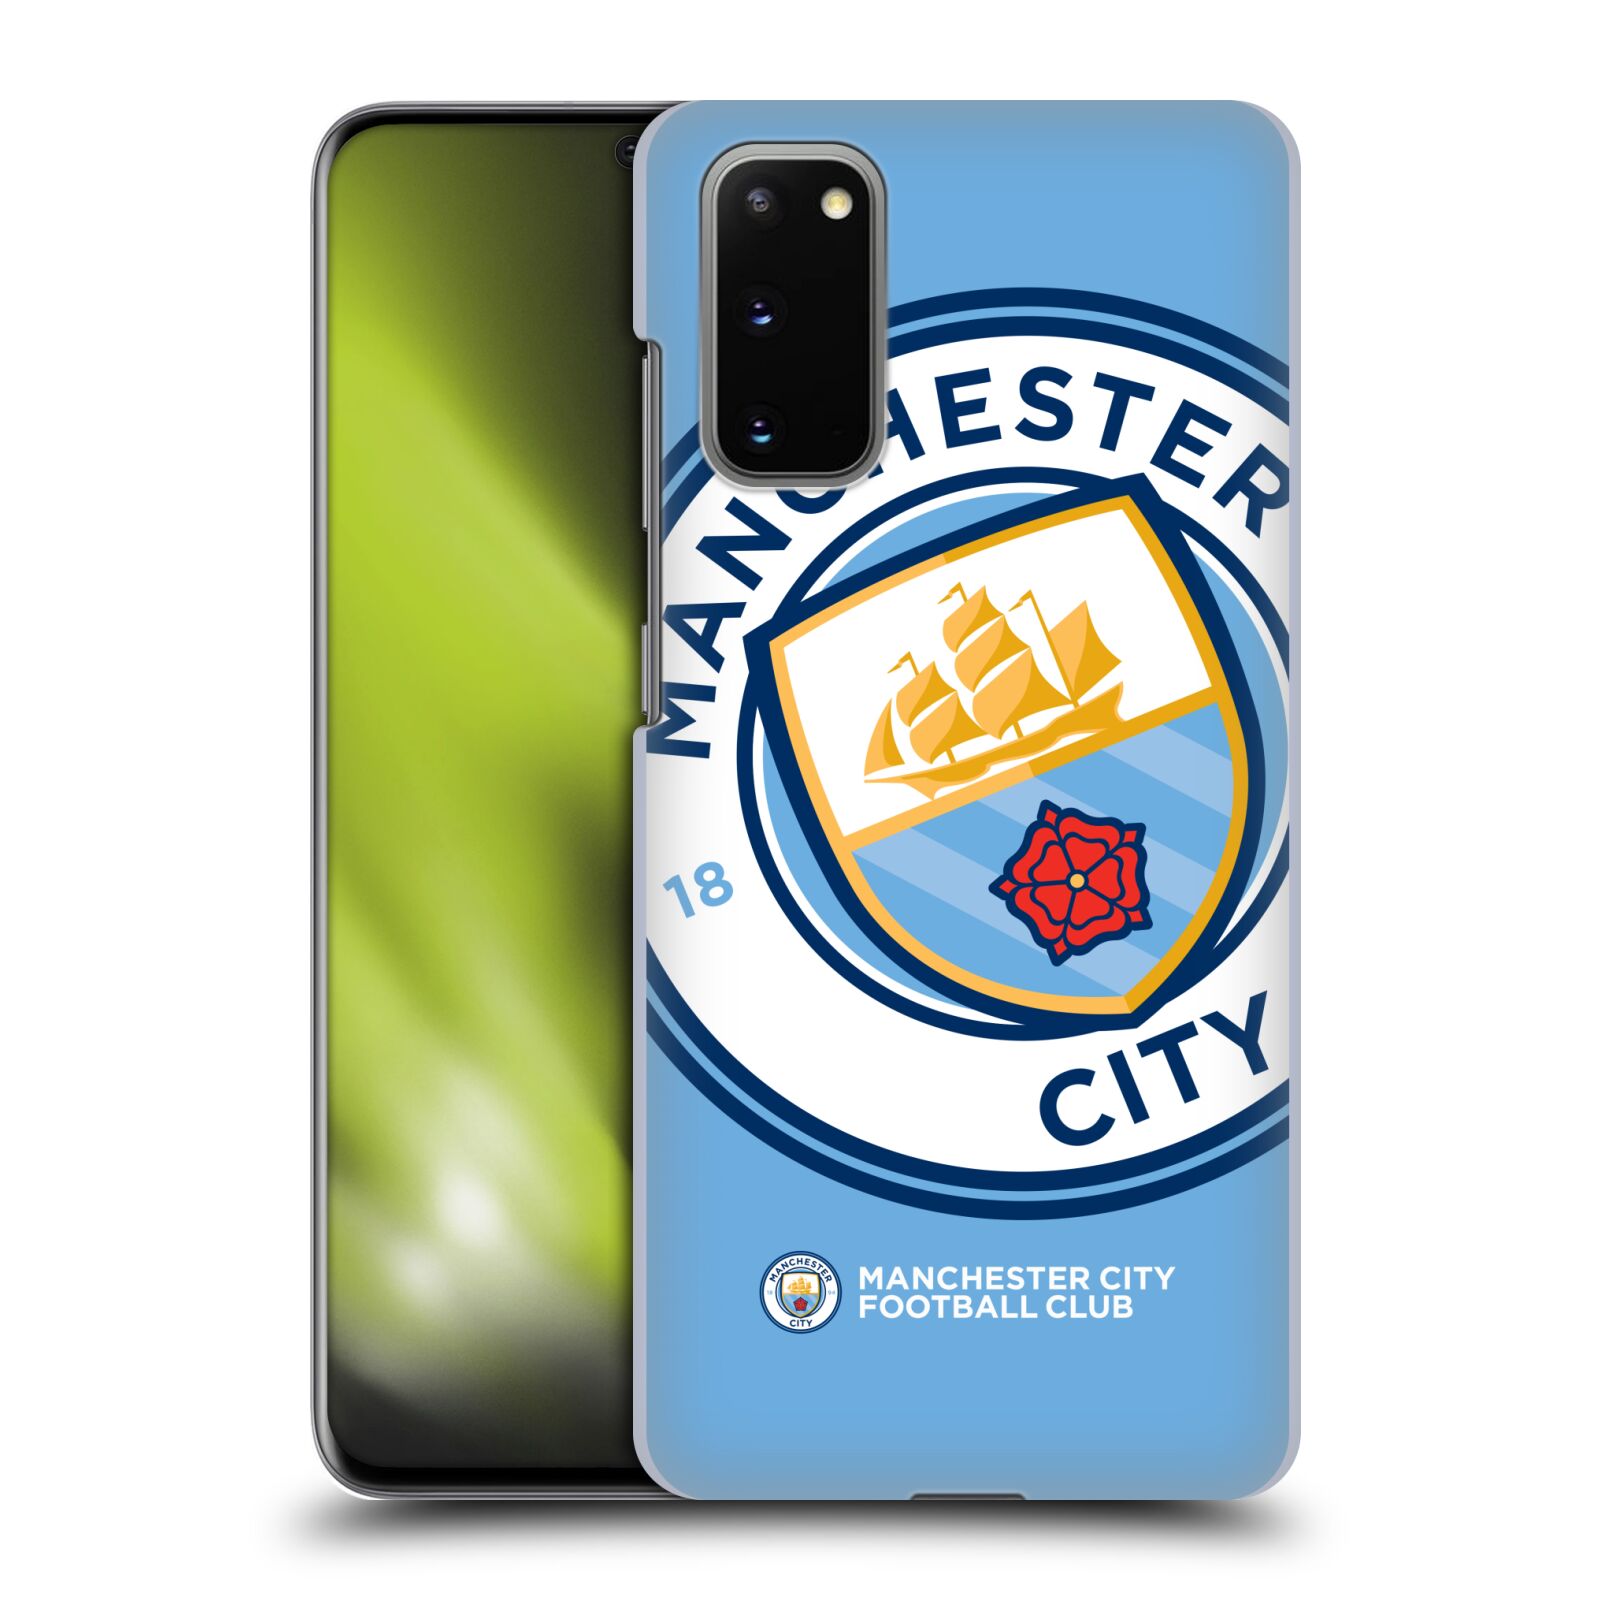 Pouzdro na mobil Samsung Galaxy S20 - HEAD CASE - Fotbalový klub Manchester City modrý velký přesahující znak